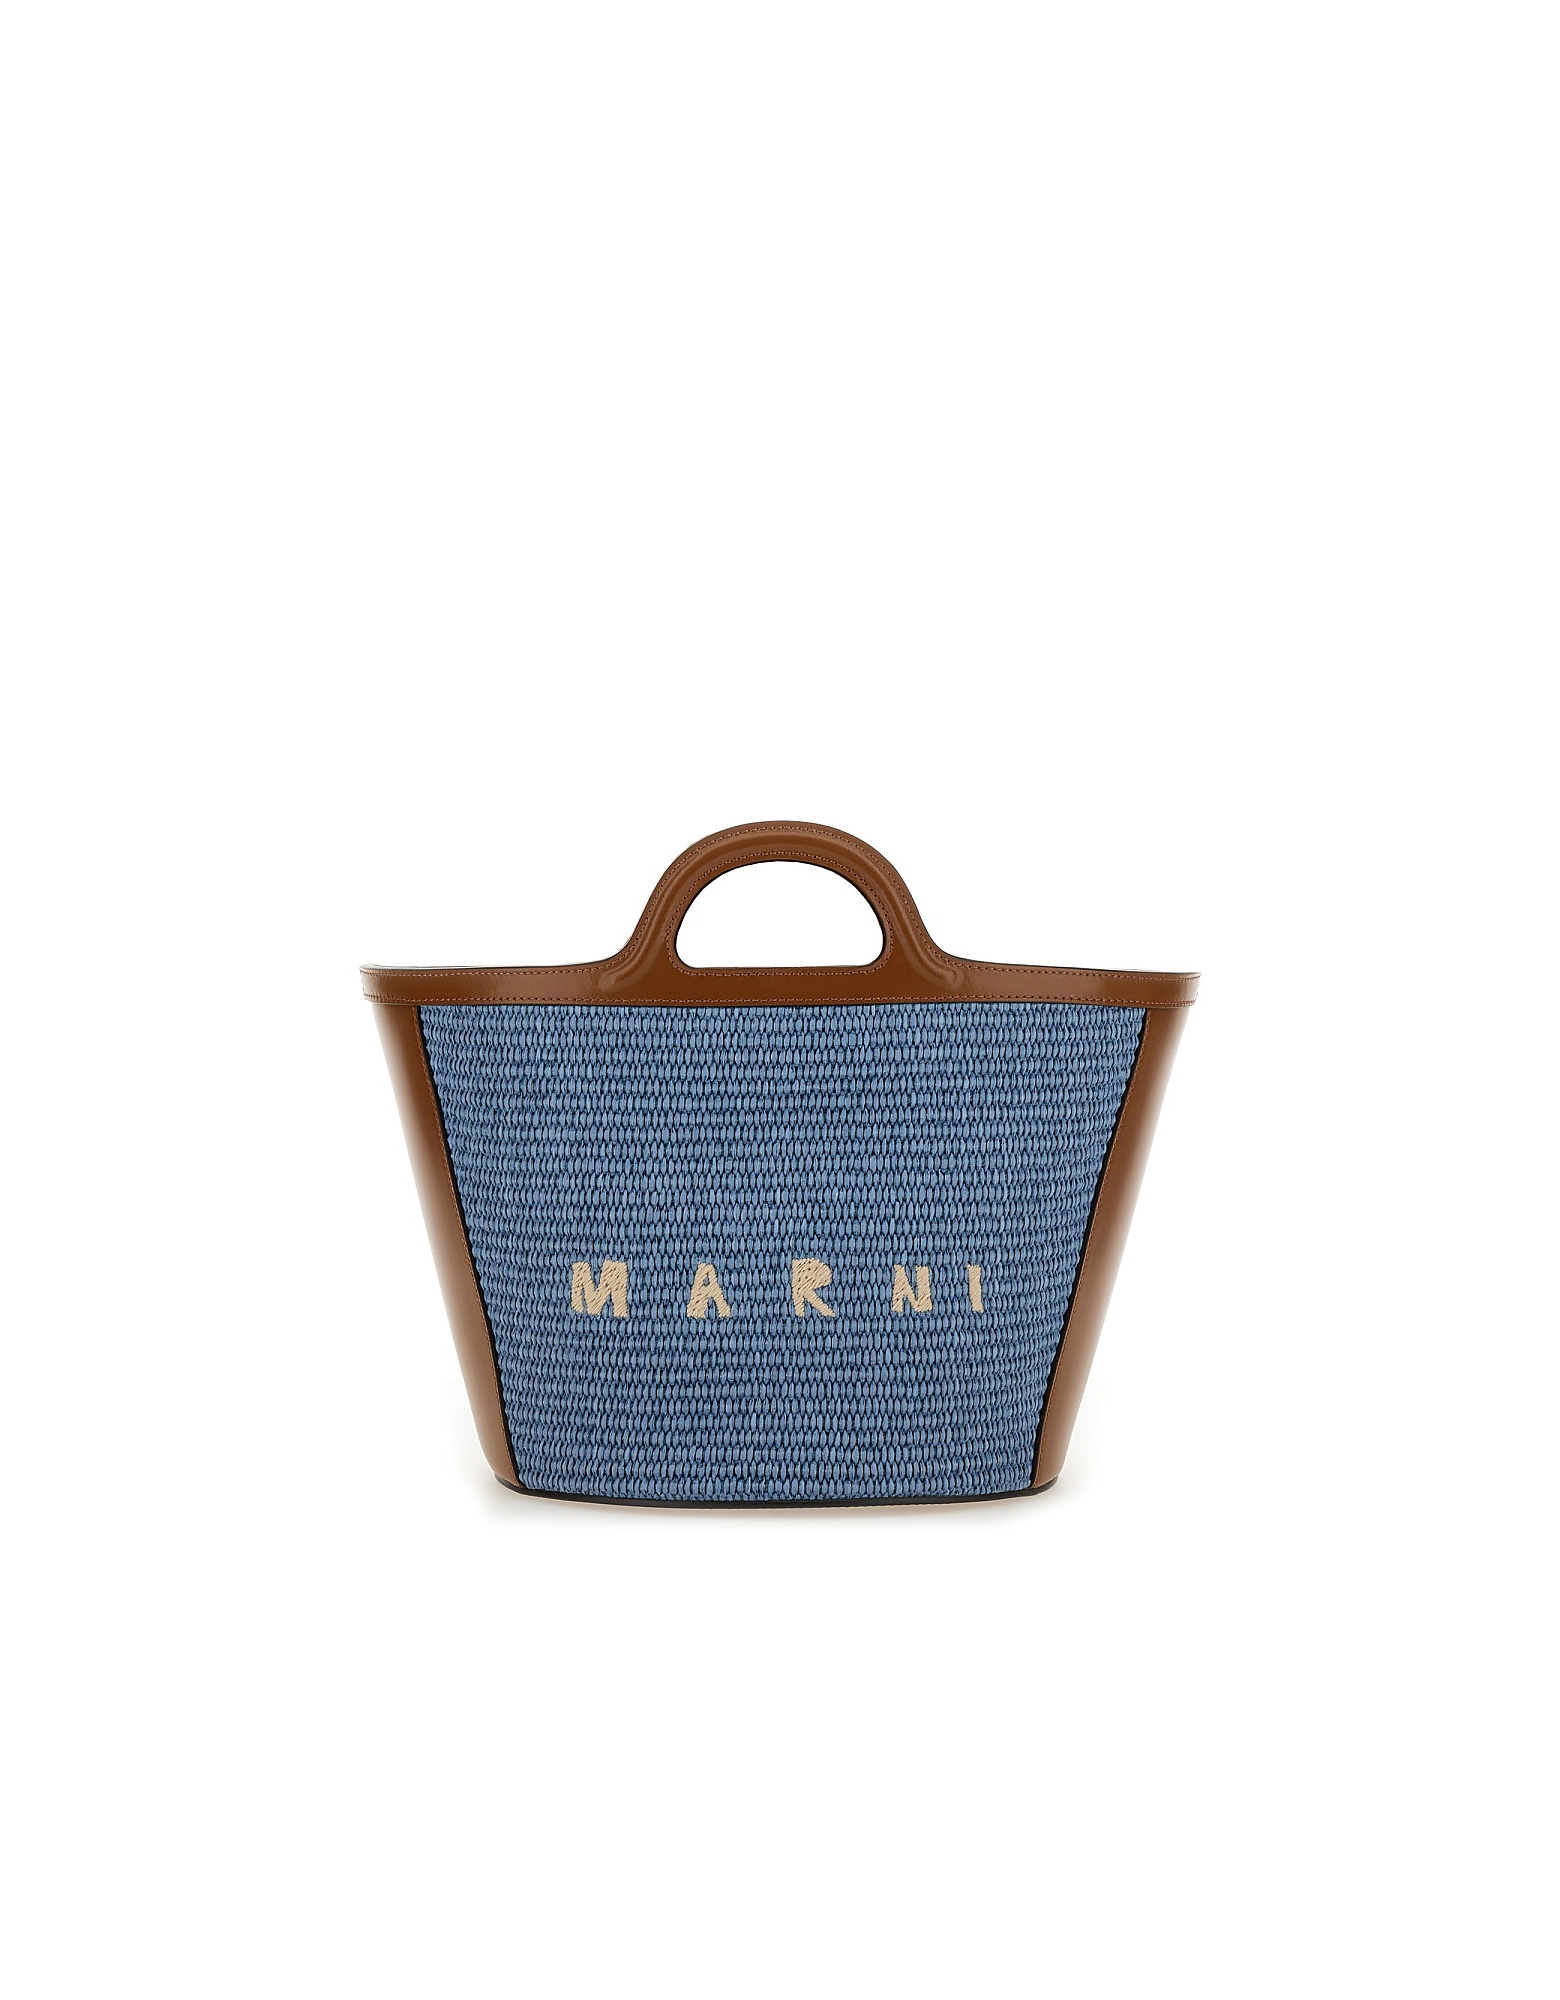 Marni Designer Handbags In Brown